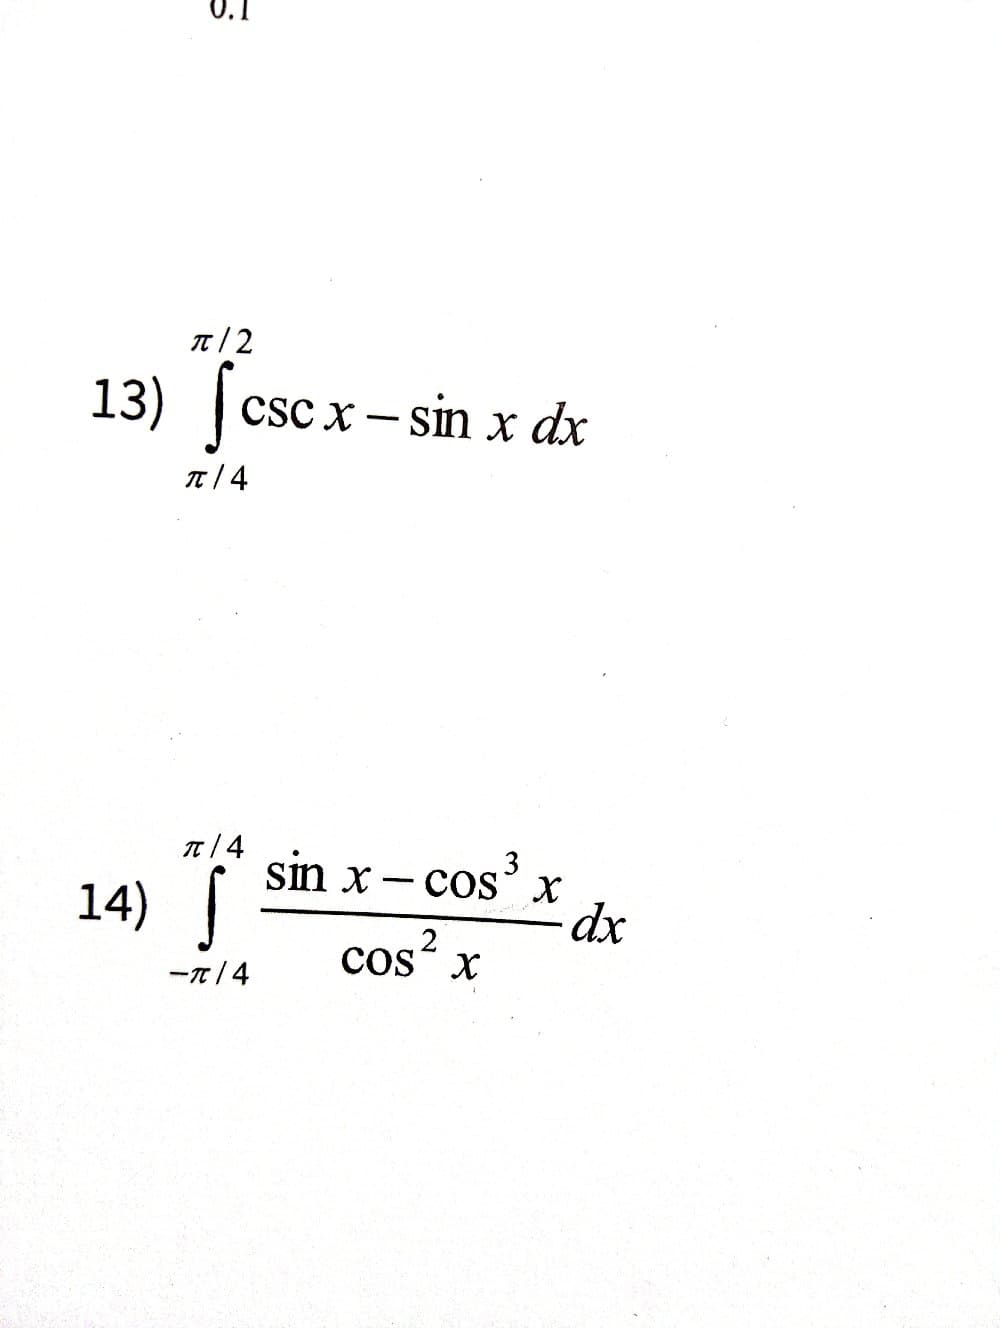 0.1
π/2
13) (cscx - sin x dx
π/4
π/4
14) S
sin x-cos³ x
dx
-π/4
Cos² x